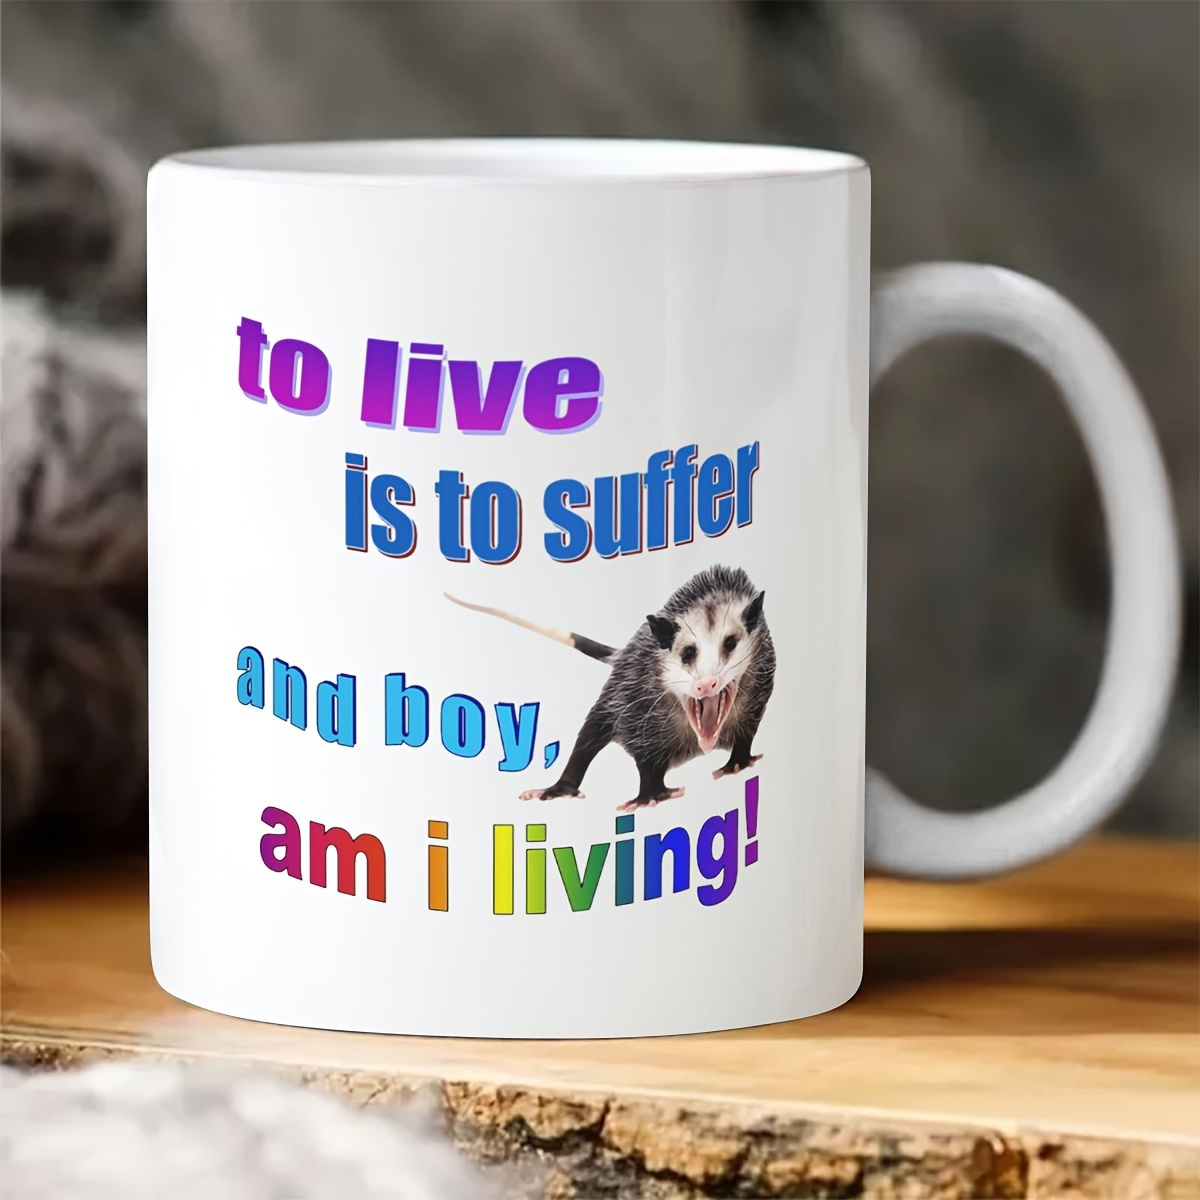 

1pc, Possum Mug, To Live Is To Suffer, And Boy Am I Living! Funny Coffee Mug, Ceramic Mug Double-sided Design, Meme Mug, Possum Gift, Opossum Mug, Novelty Gift, Coffee Cup, Tea Cup, Home Decor